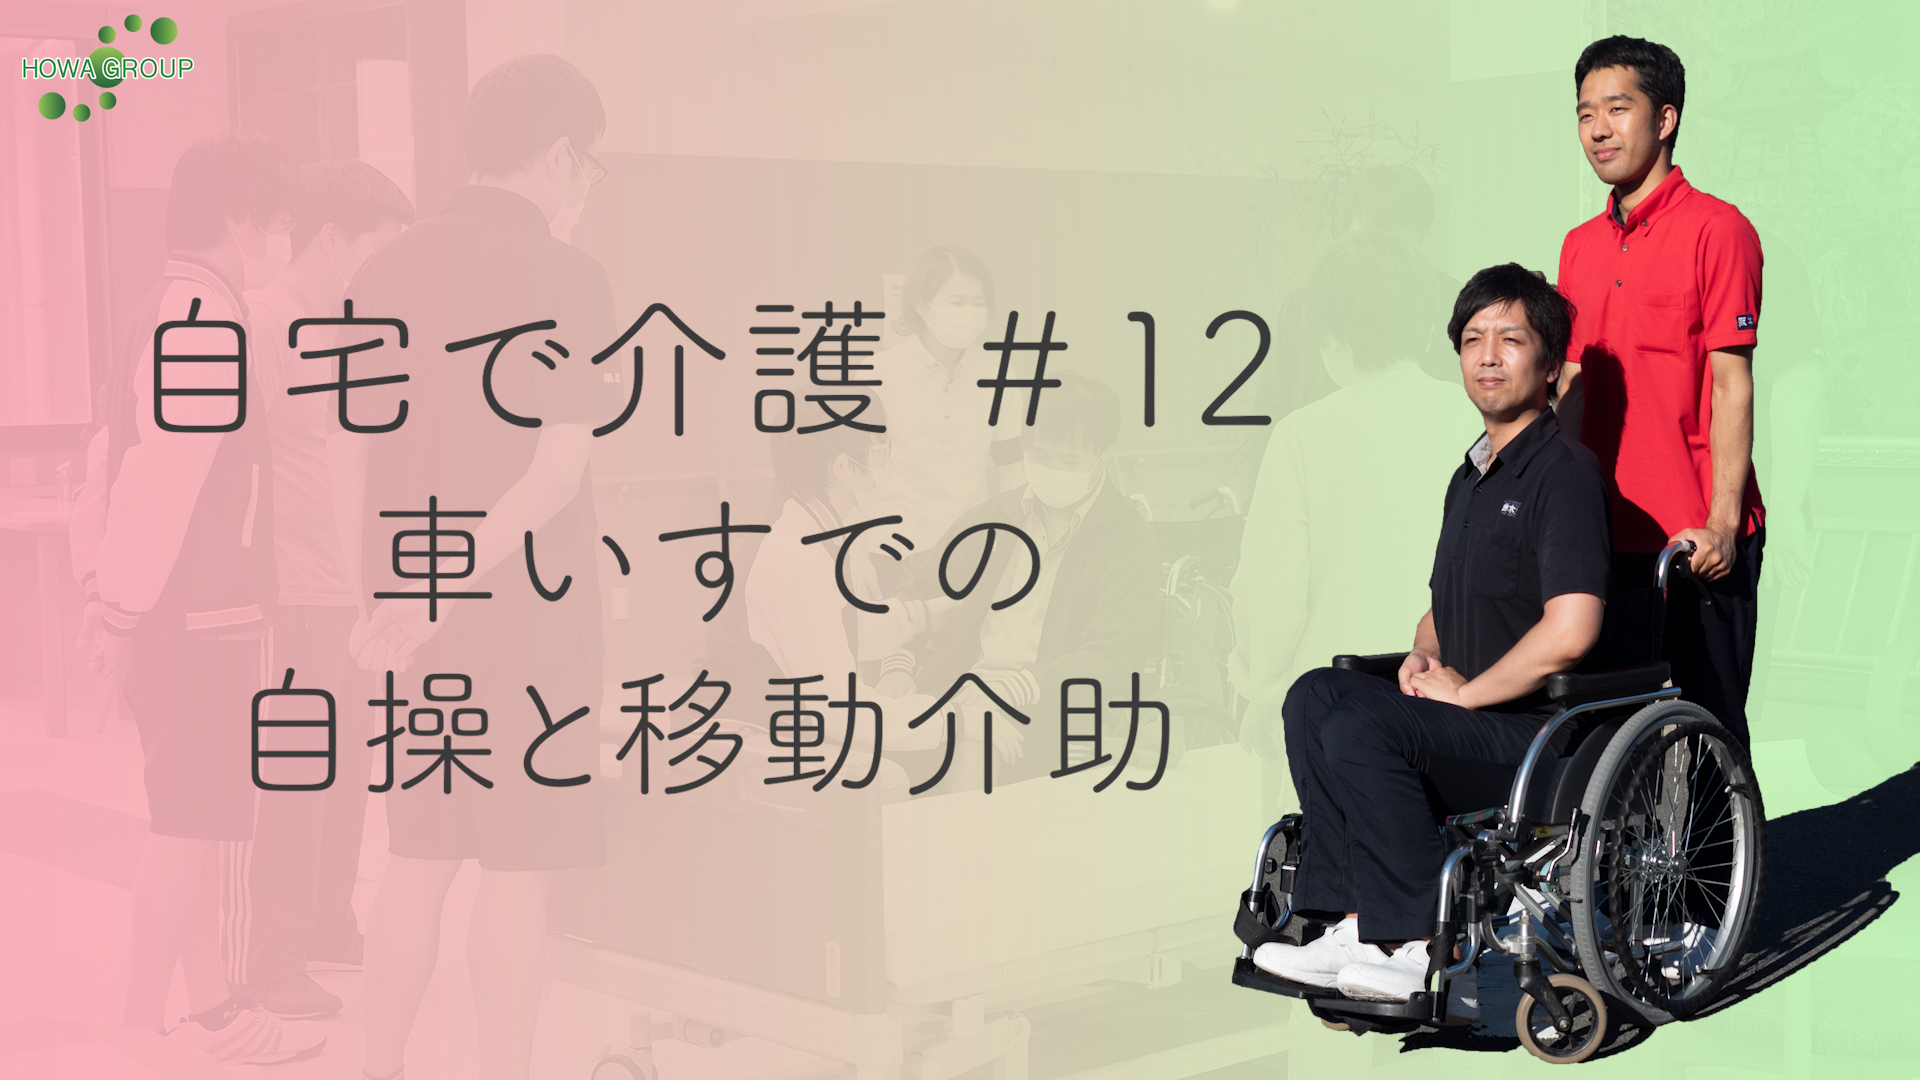 21370円 円高還元 車椅子用の湾曲したスライディングトランスファーボード 高齢者 身体障害者 および障害者用の回転シートトランスファーエイドおよびスライドボード